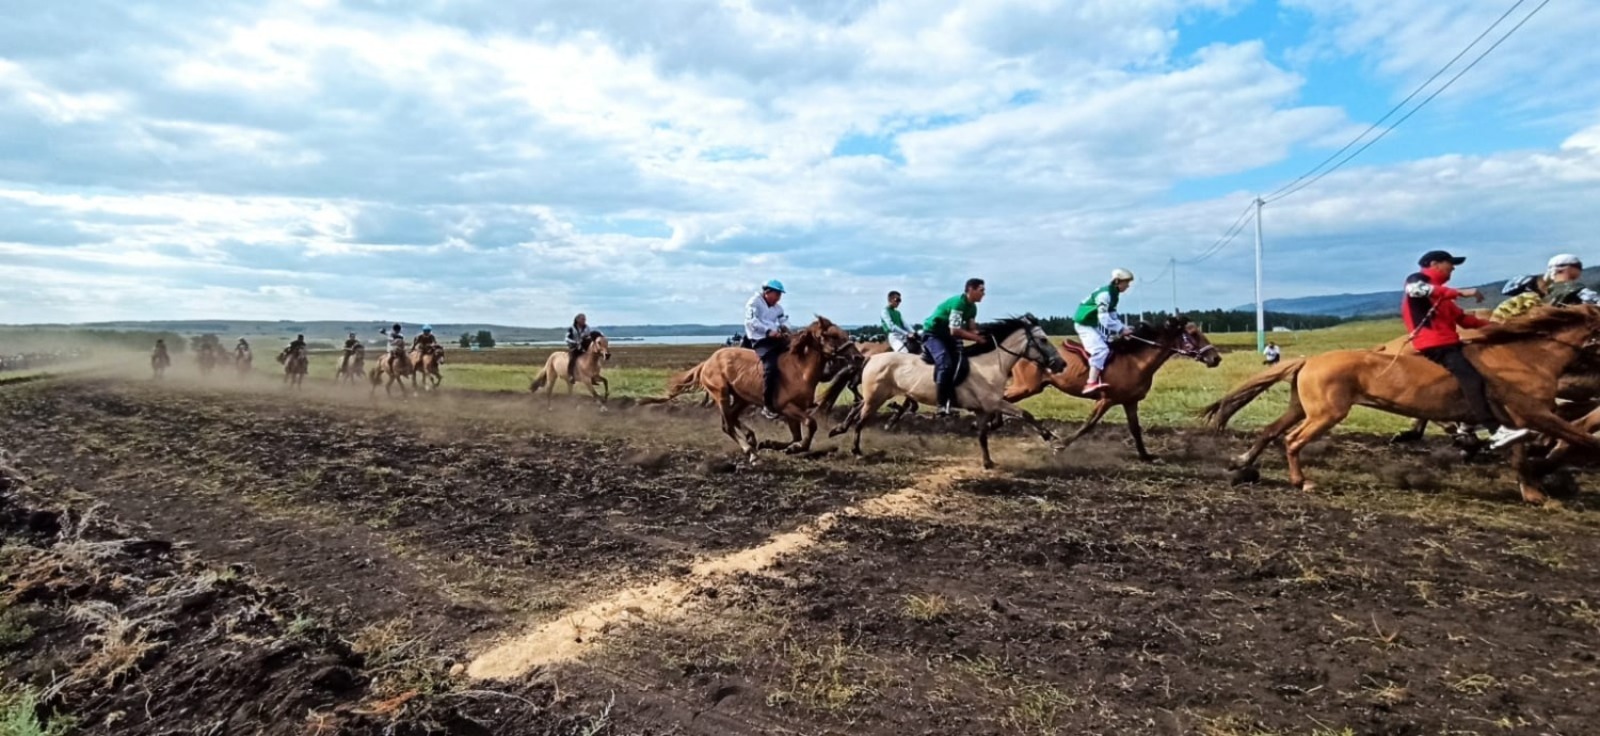 На специальном поле  фестиваля башкирской лошади  проходили  финальная игра "Ылак" и скачки